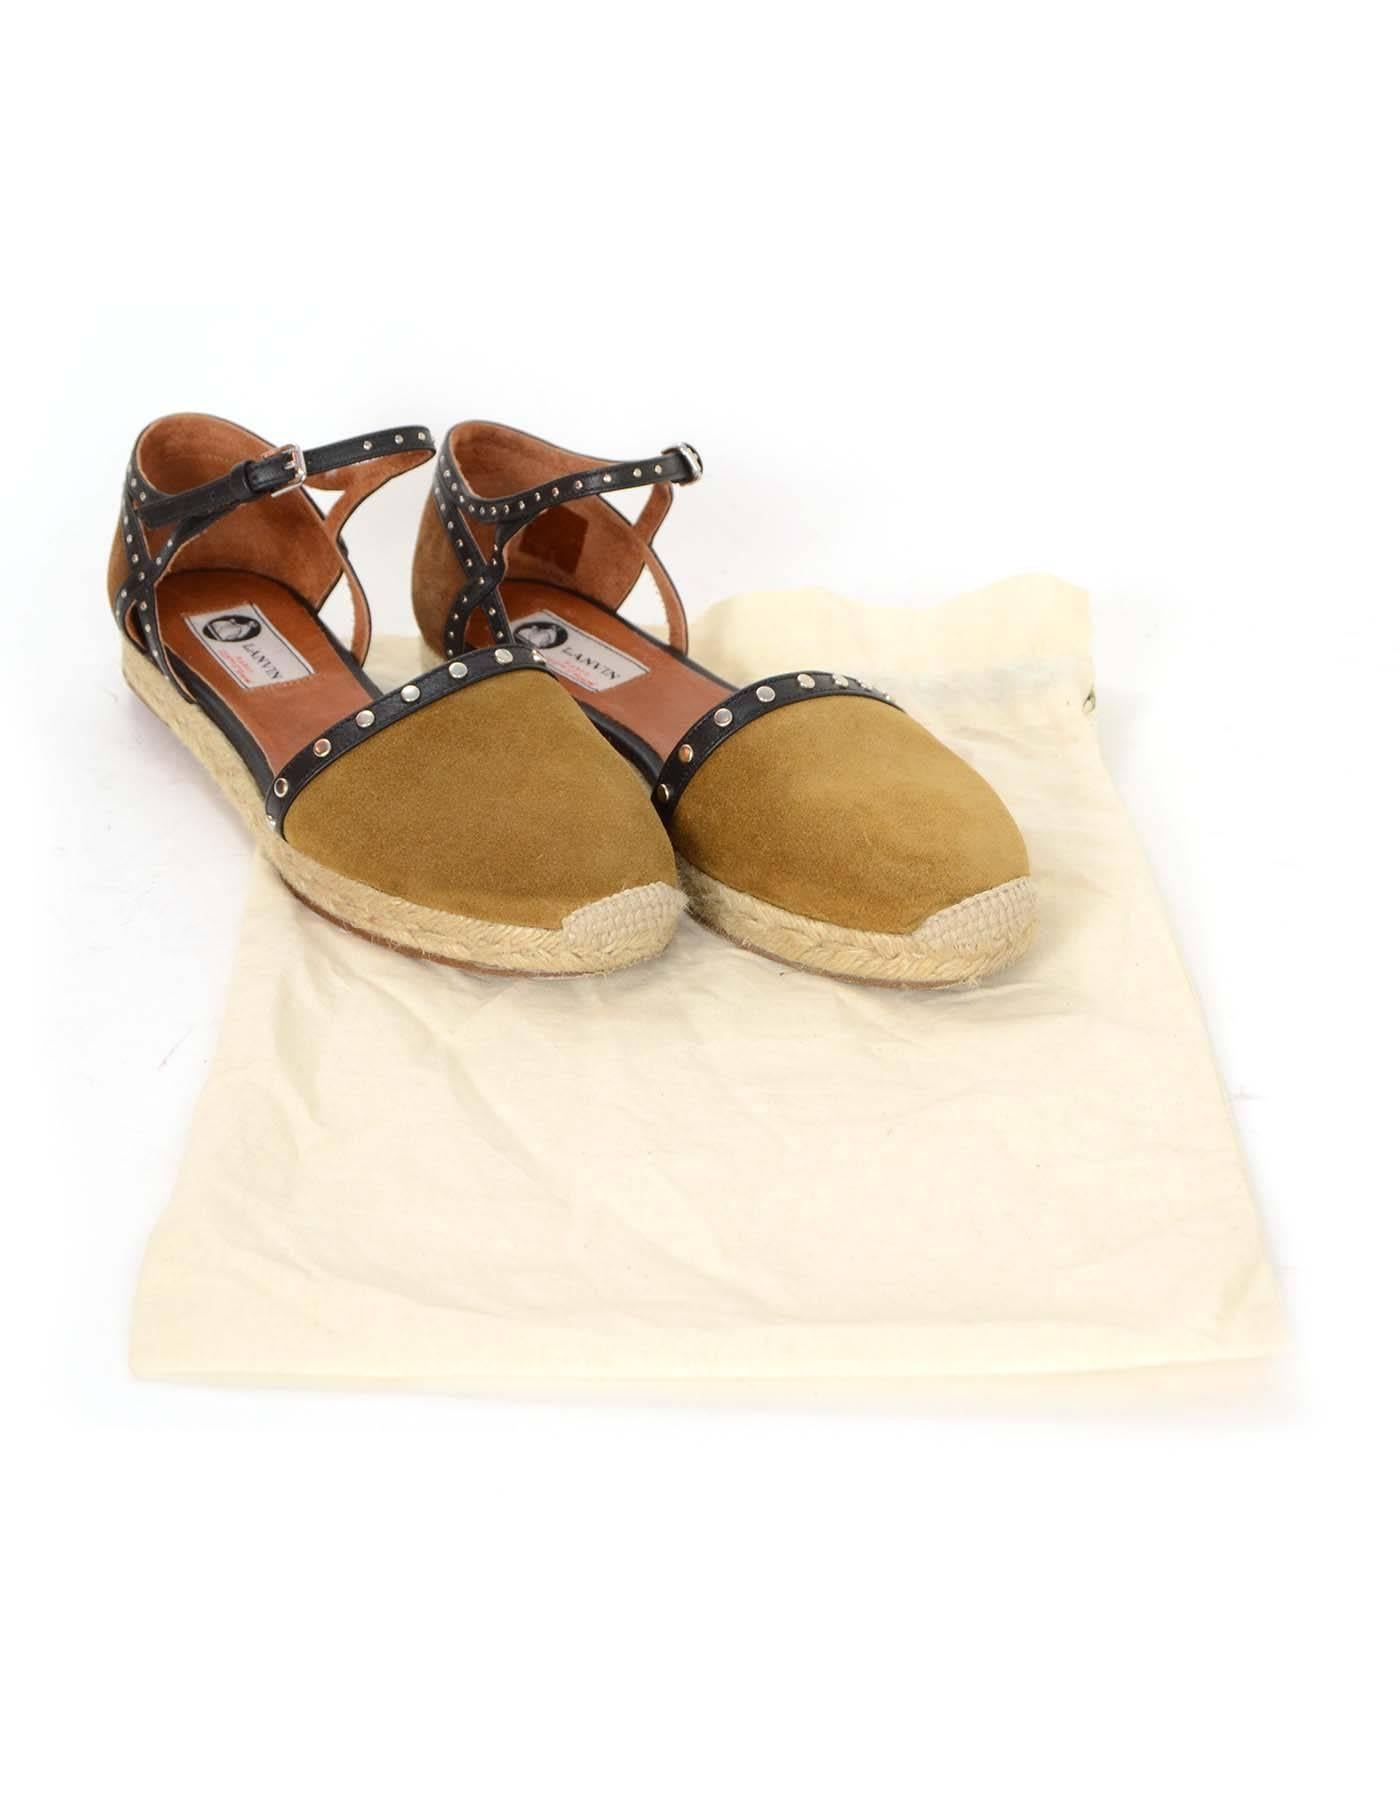  Lanvin Black & Brown Studded Espadrilles Shoes Sz 39 4